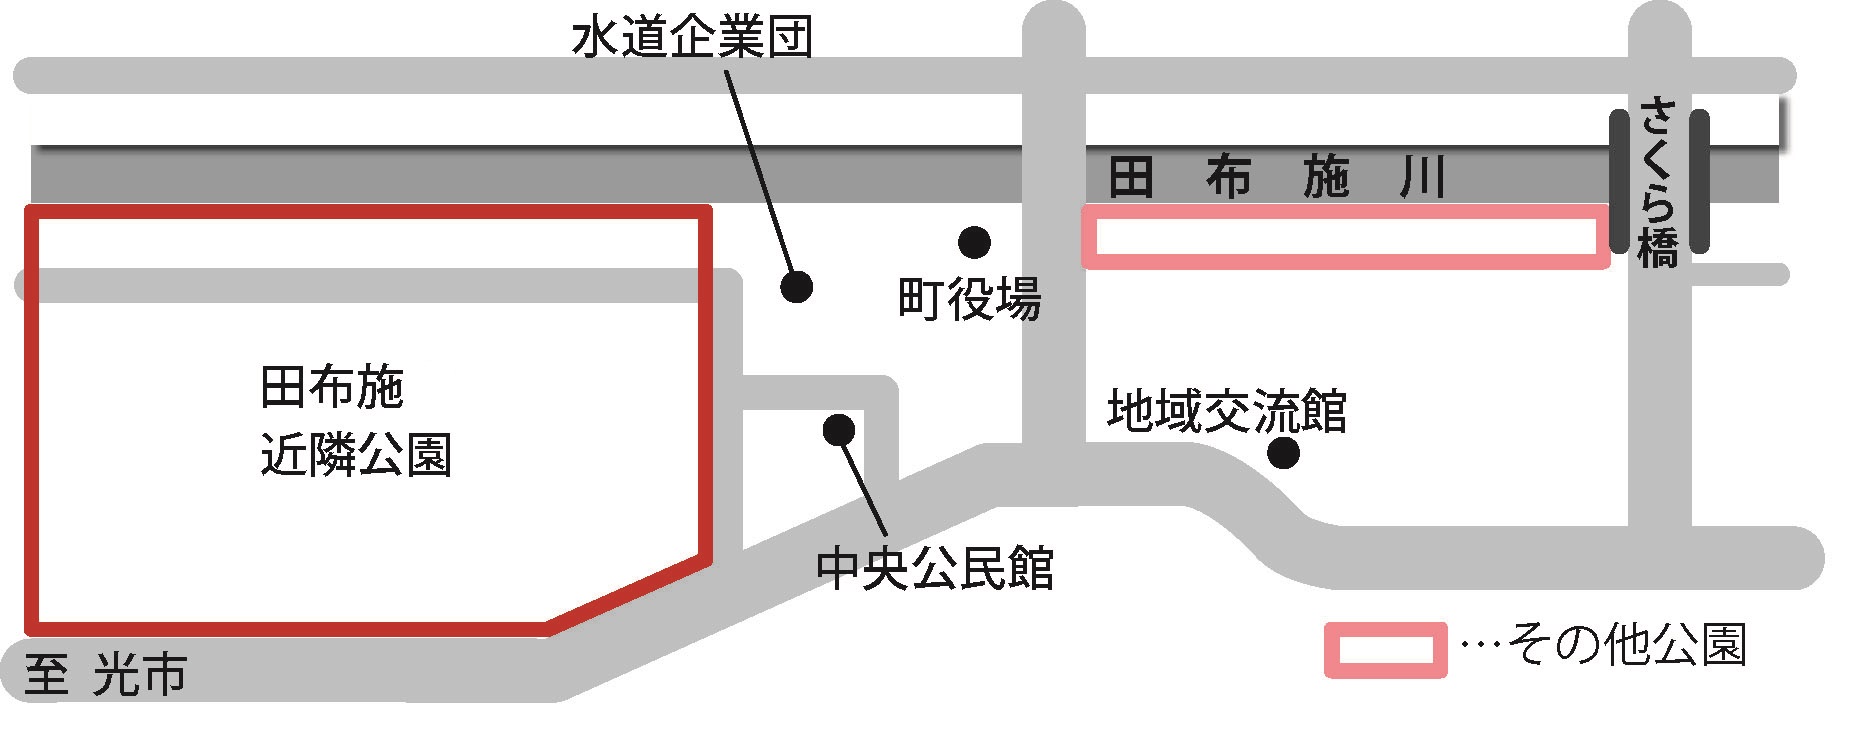 田布施近隣公園の位置を示した図